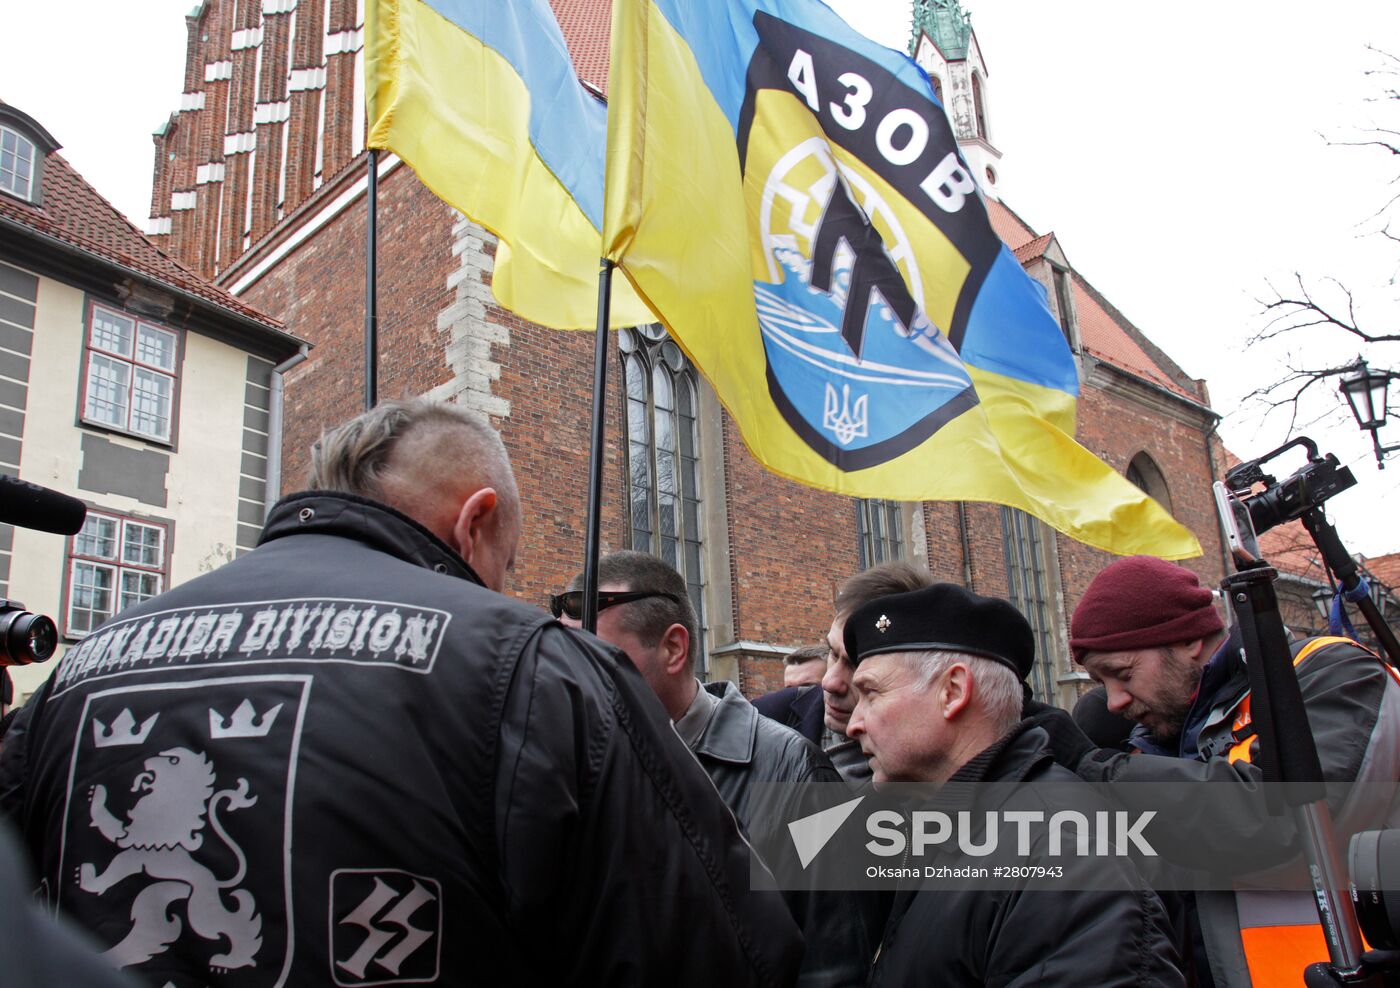 Waffen-SS Legion veterans march in Riga